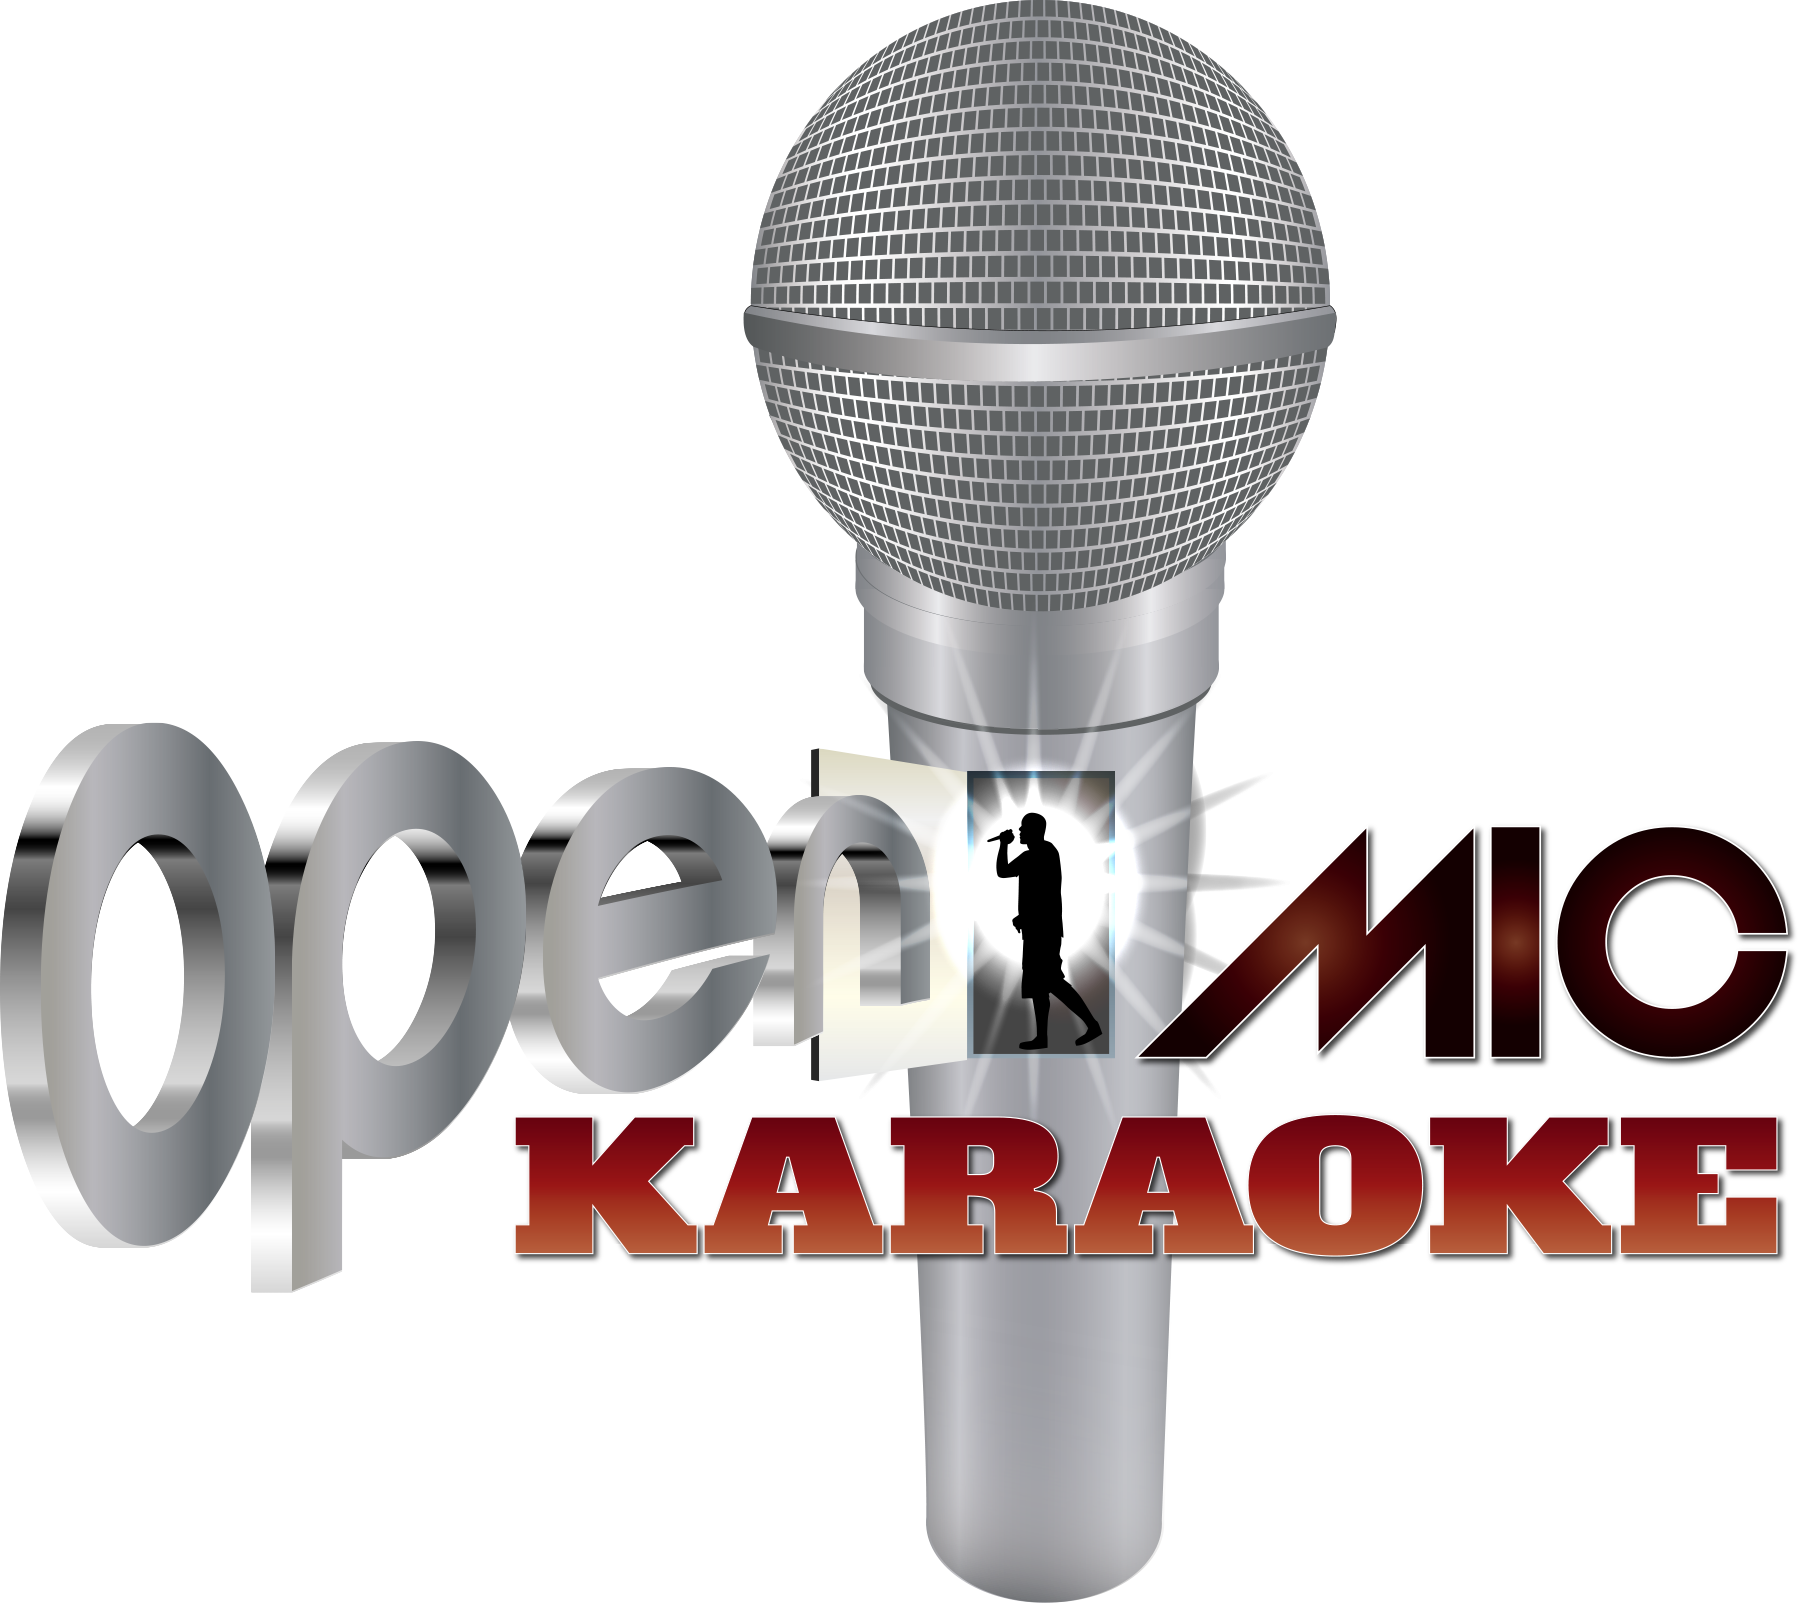 karaoke clipart lip sync battle